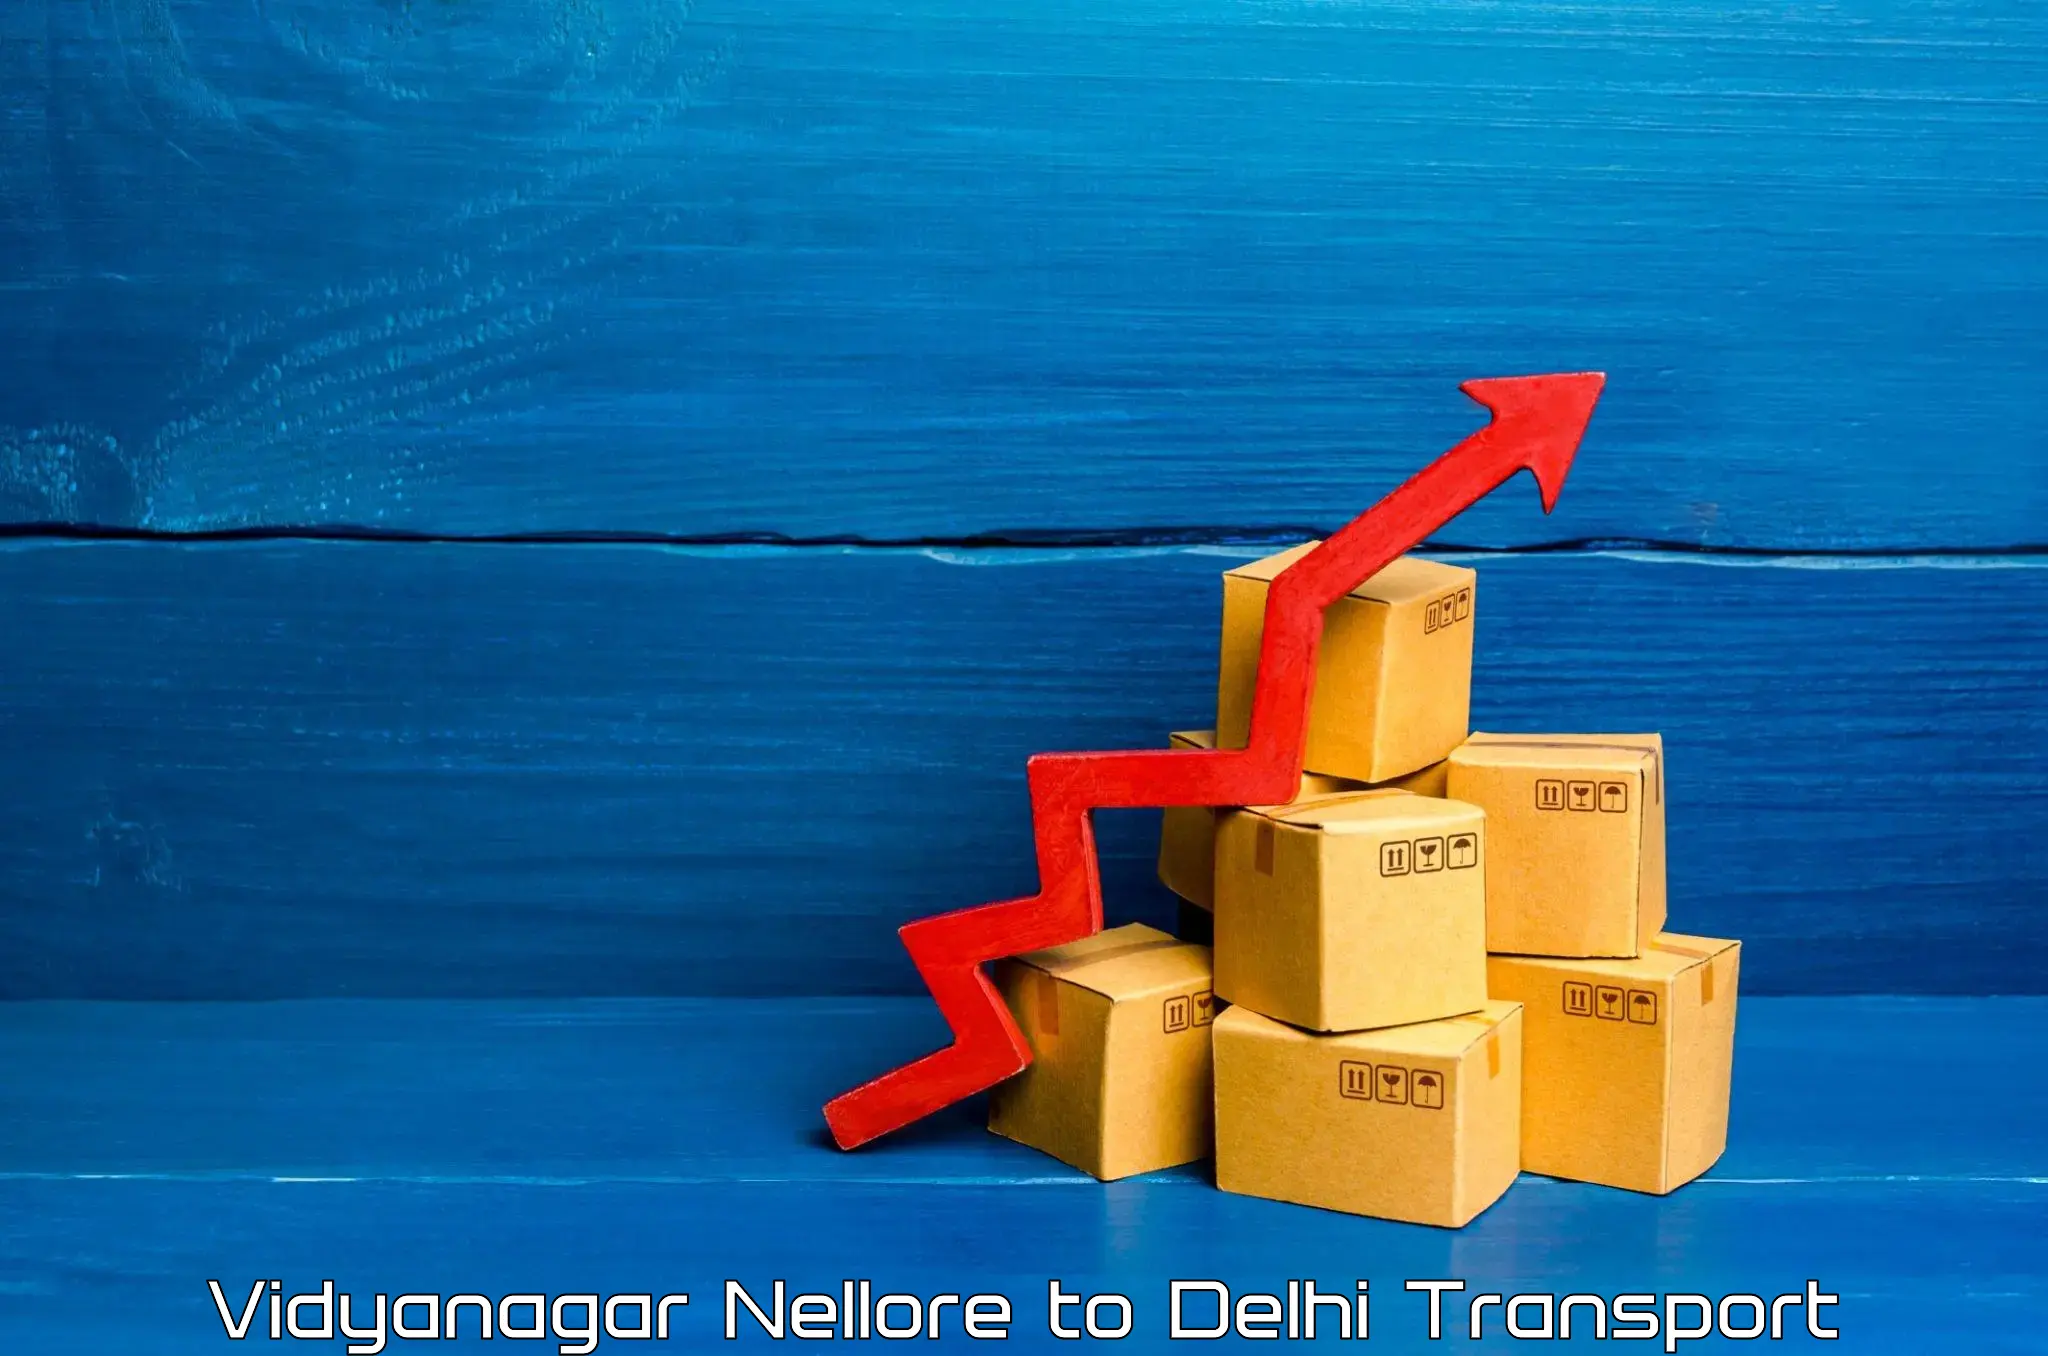 All India transport service Vidyanagar Nellore to University of Delhi